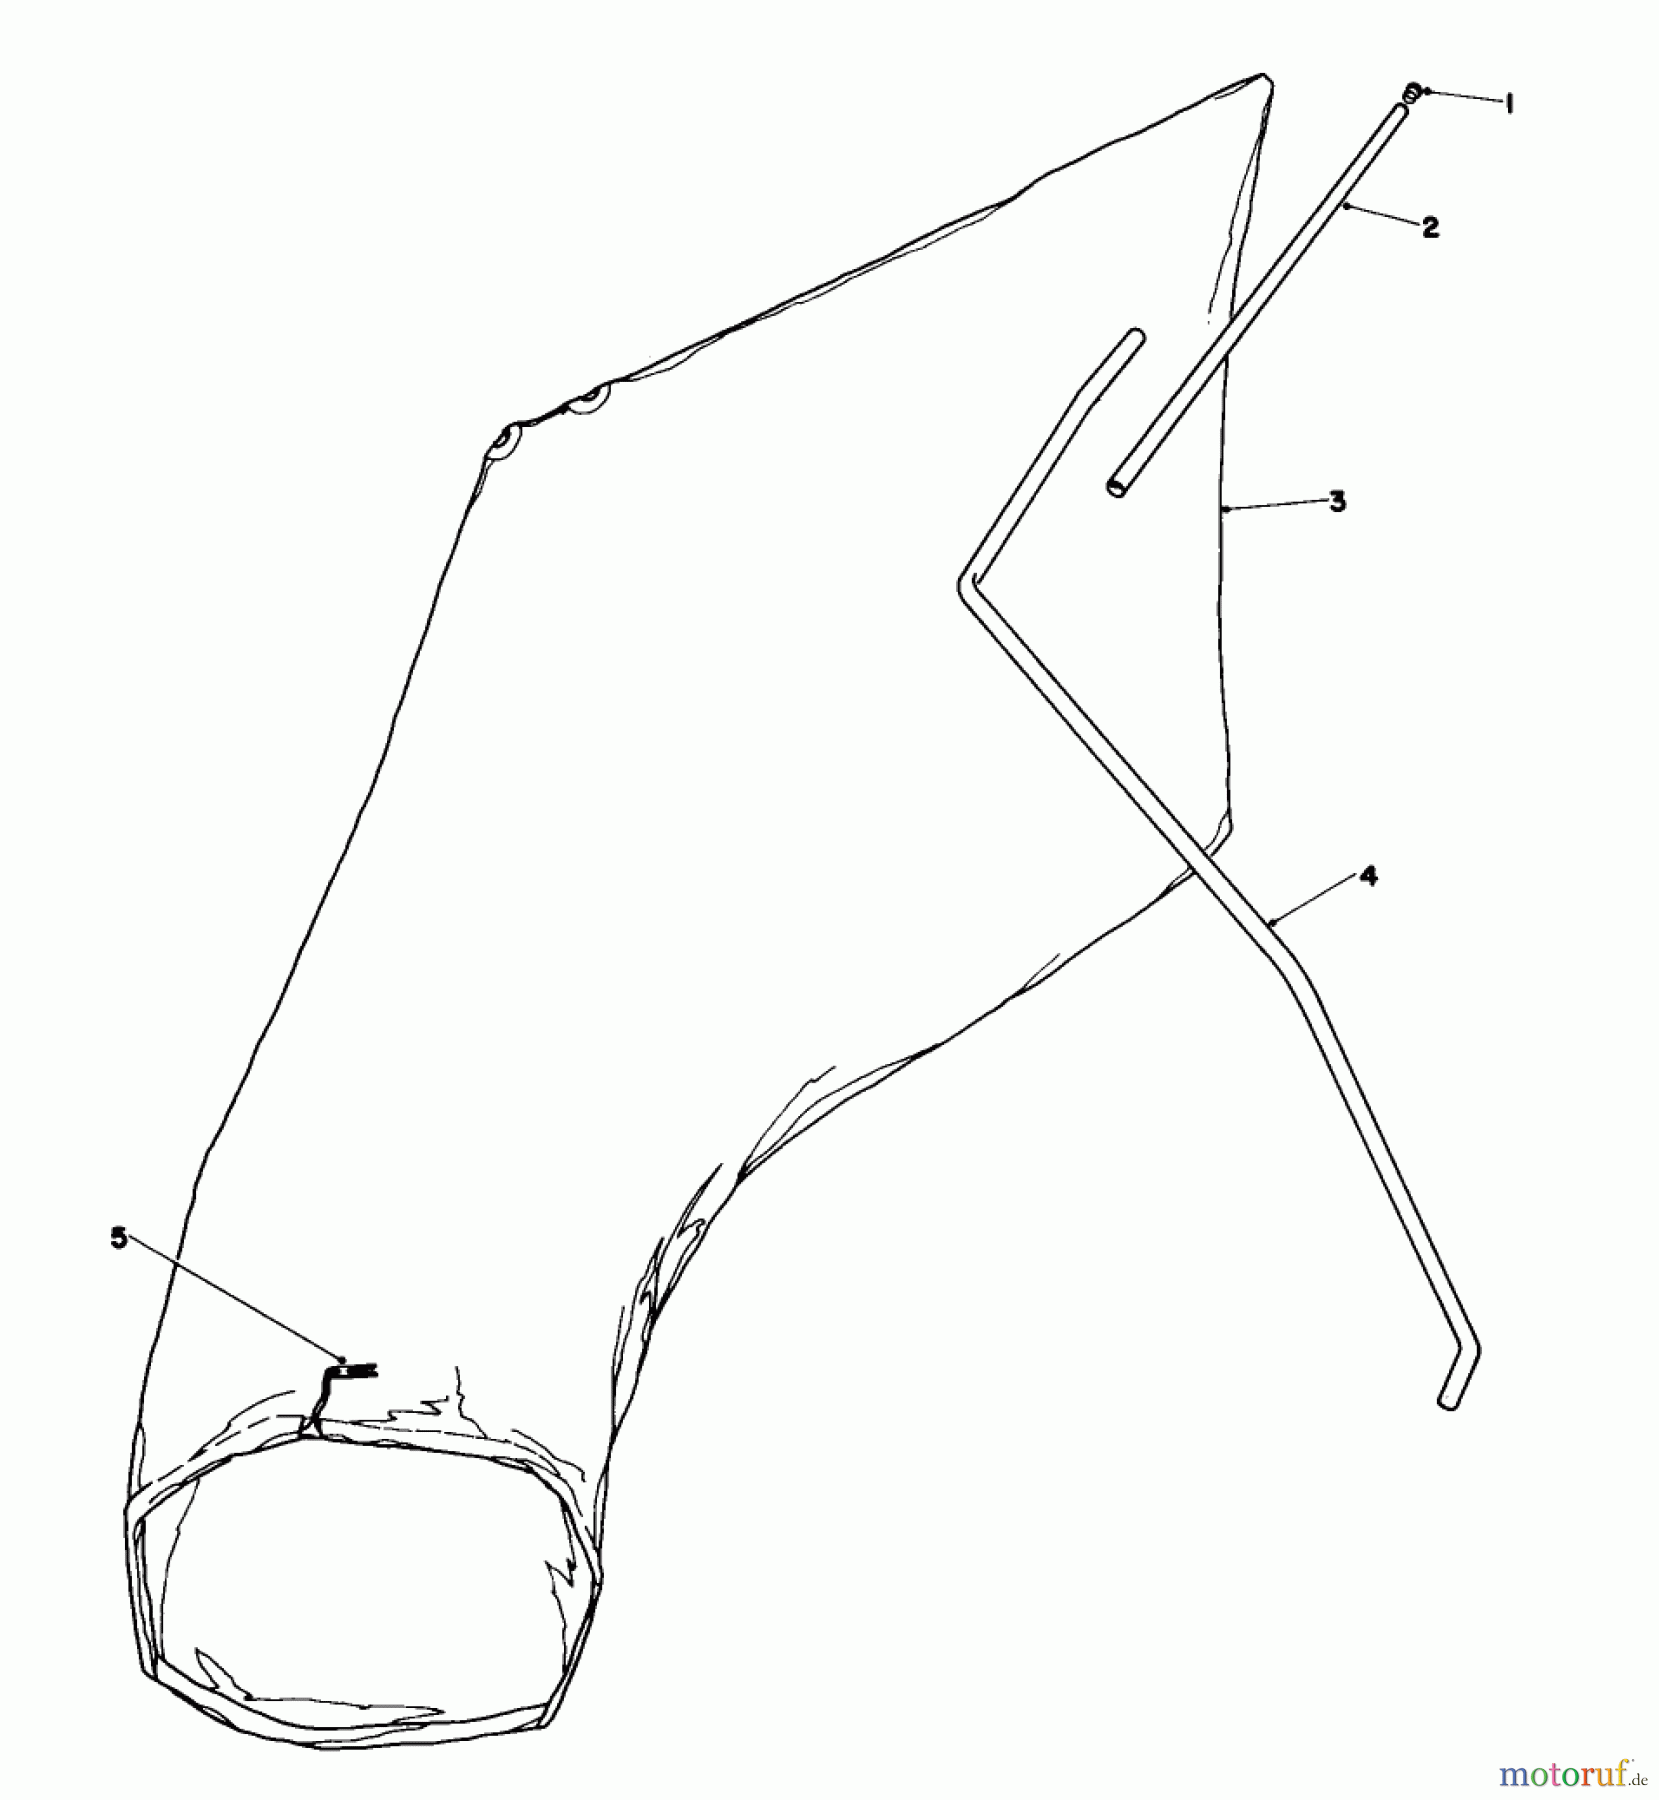  Toro Neu Mowers, Walk-Behind Seite 1 16380 - Toro Whirlwind II Lawnmower, 1979 (9000001-9999999) GIANT BAGGING KIT NO. 29-9750 (OPTIONAL)